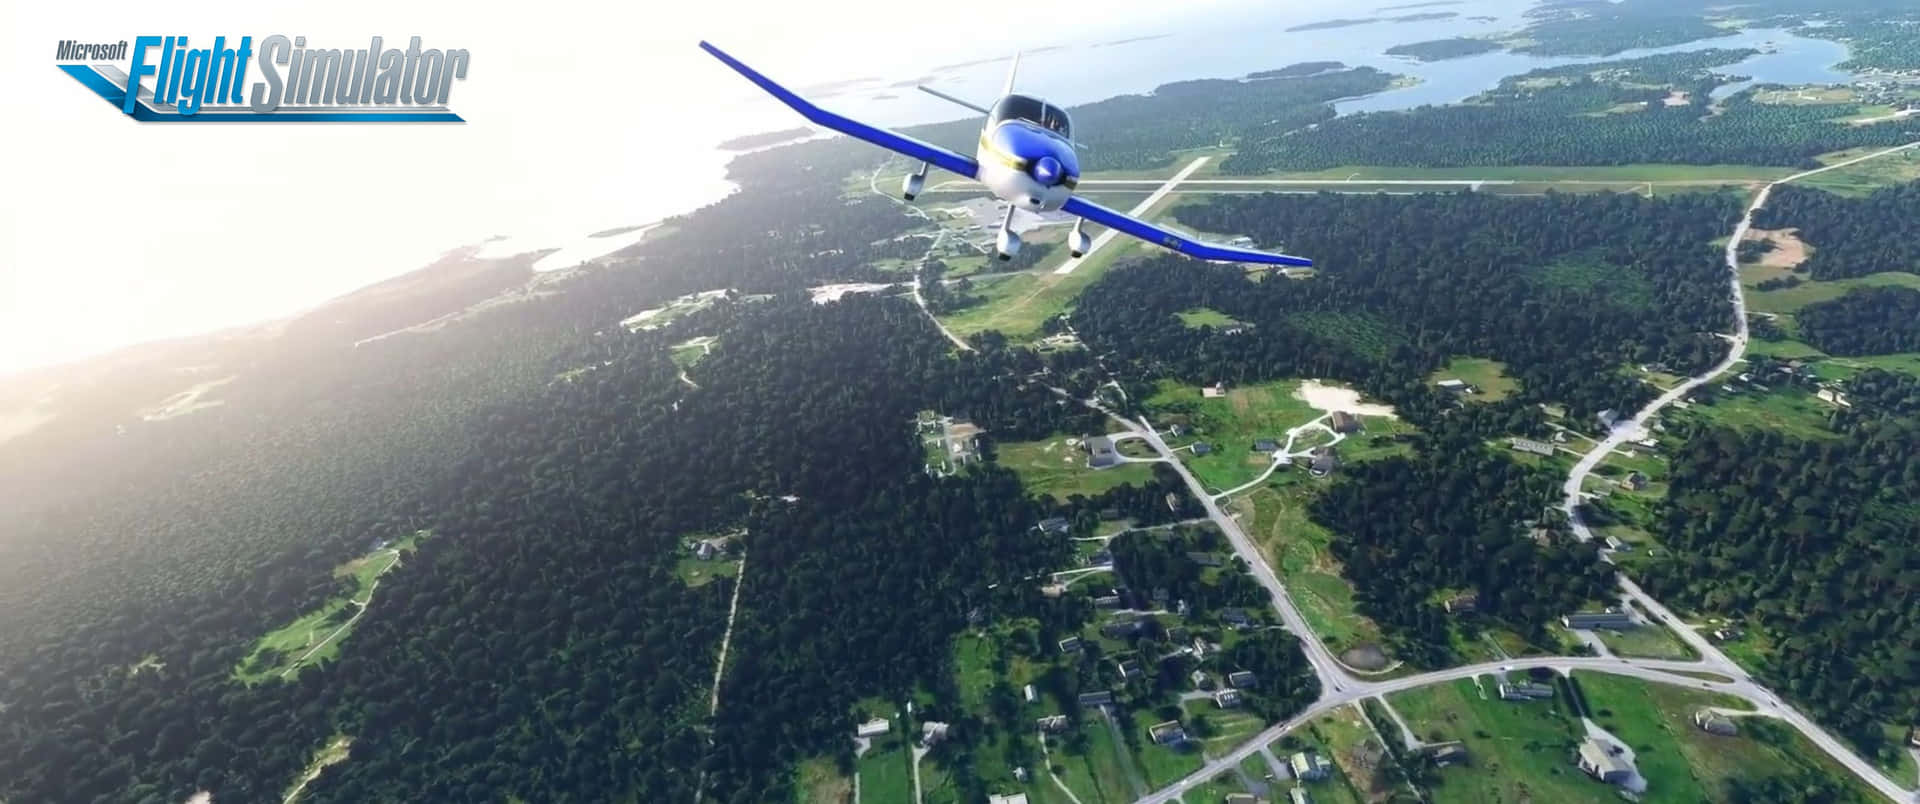 Utforskavärlden I Microsoft Flight Simulator.